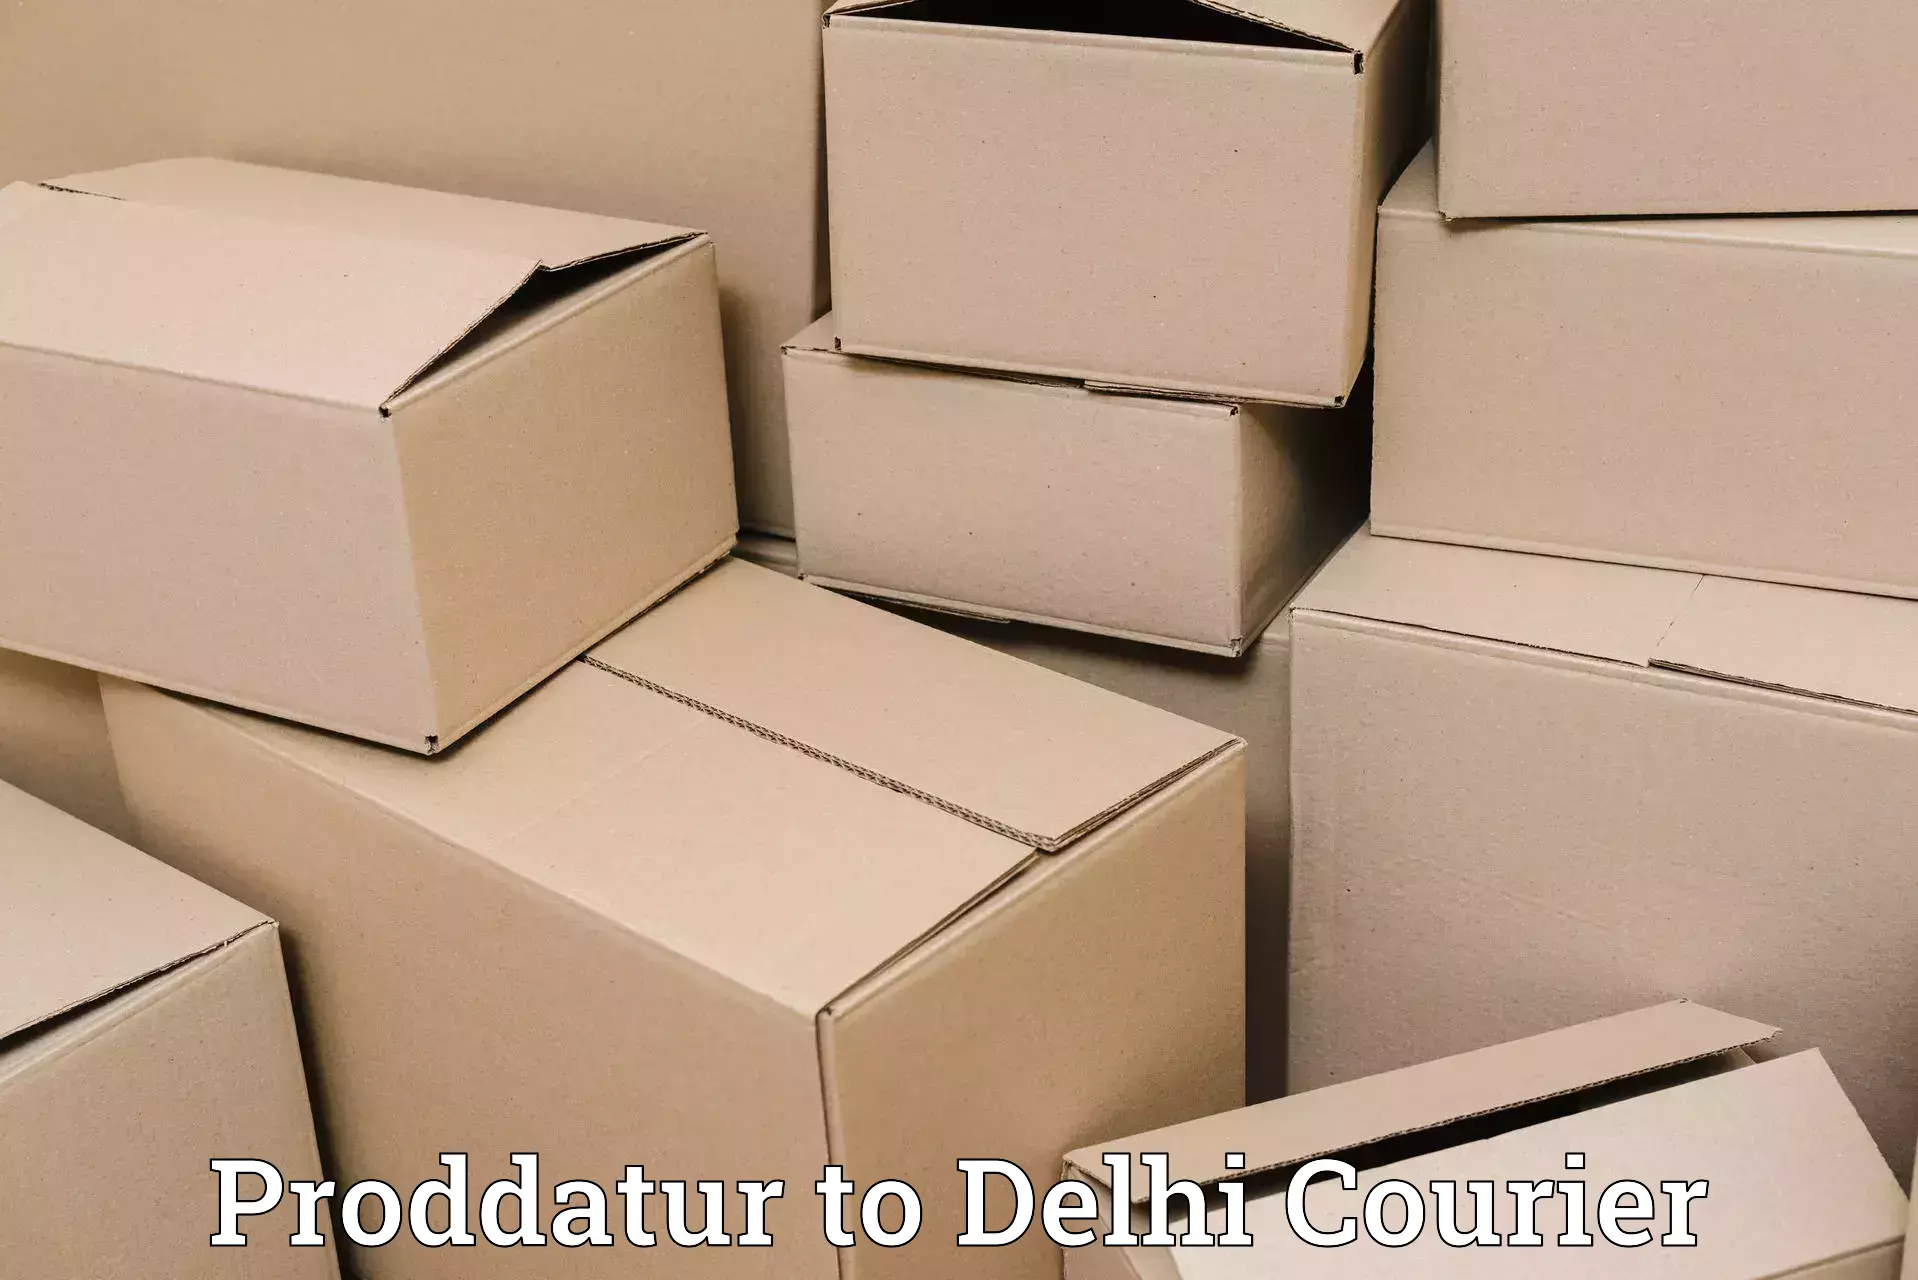 Luggage transport logistics Proddatur to Delhi